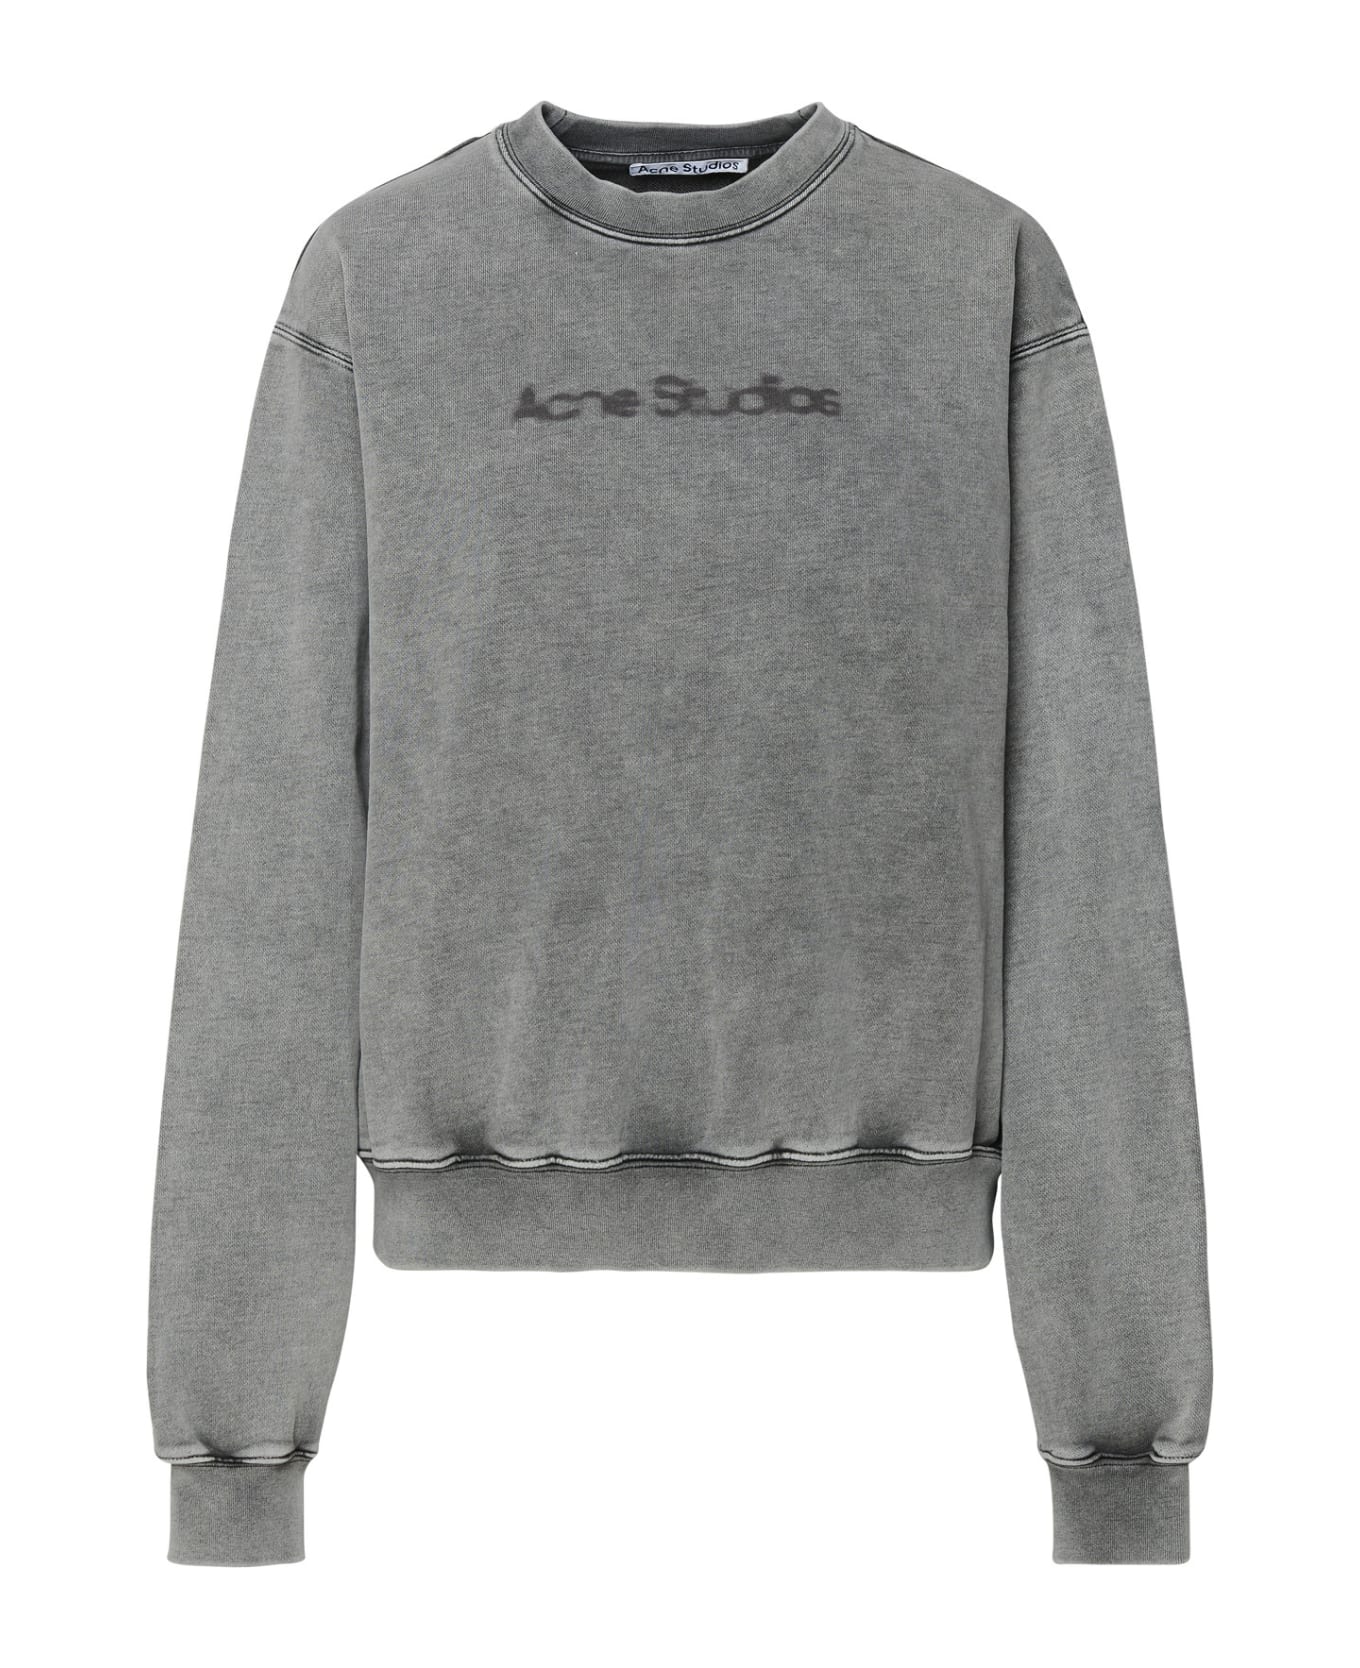 Acne Studios Gray Cotton Sweatshirt - FADED GREY